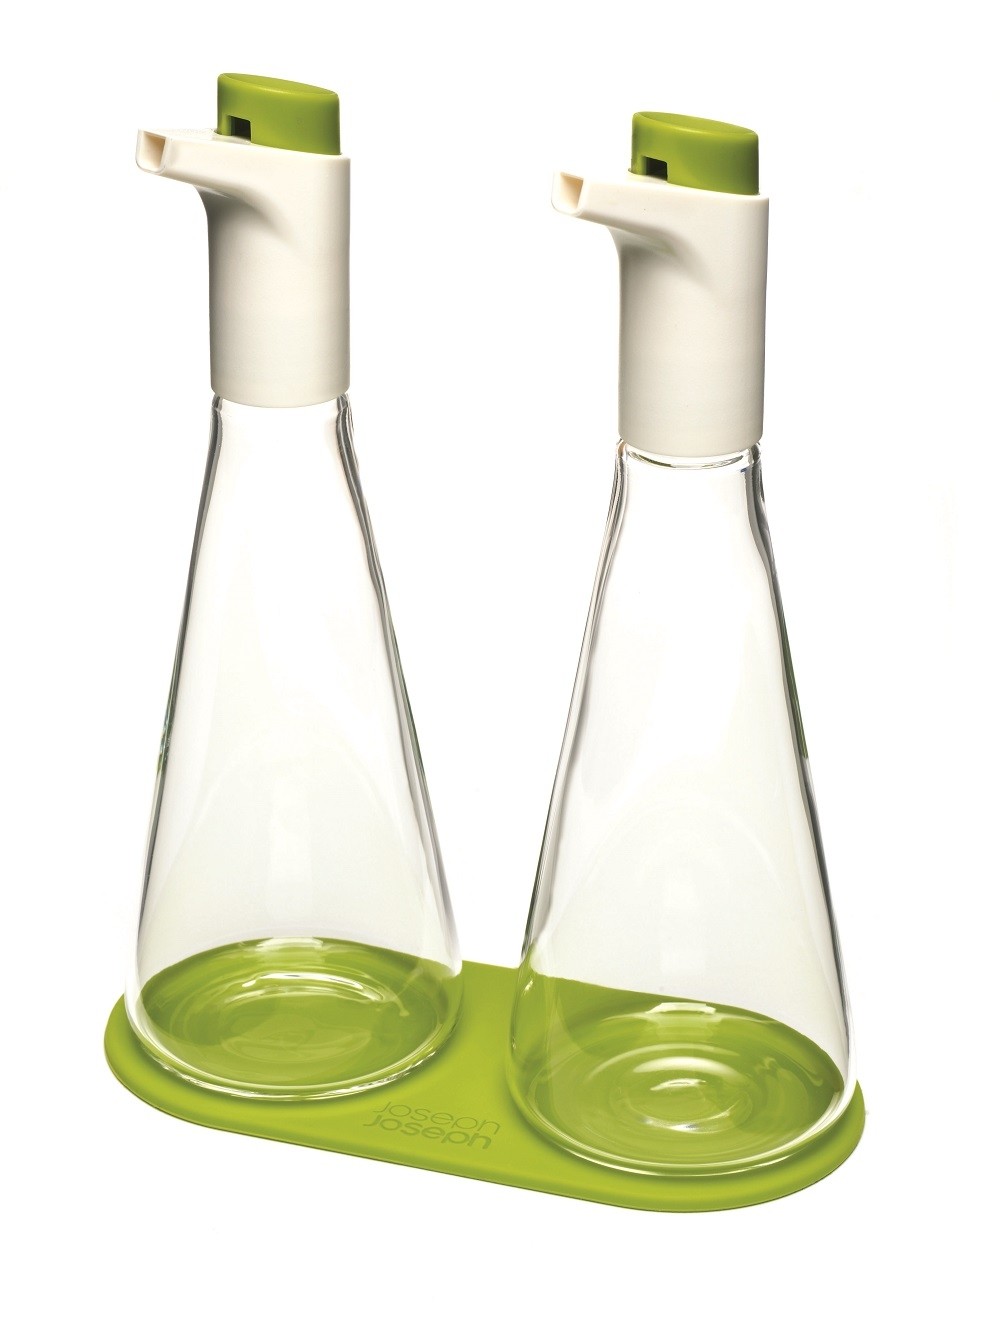 Glass oil and vinegar bottles 2